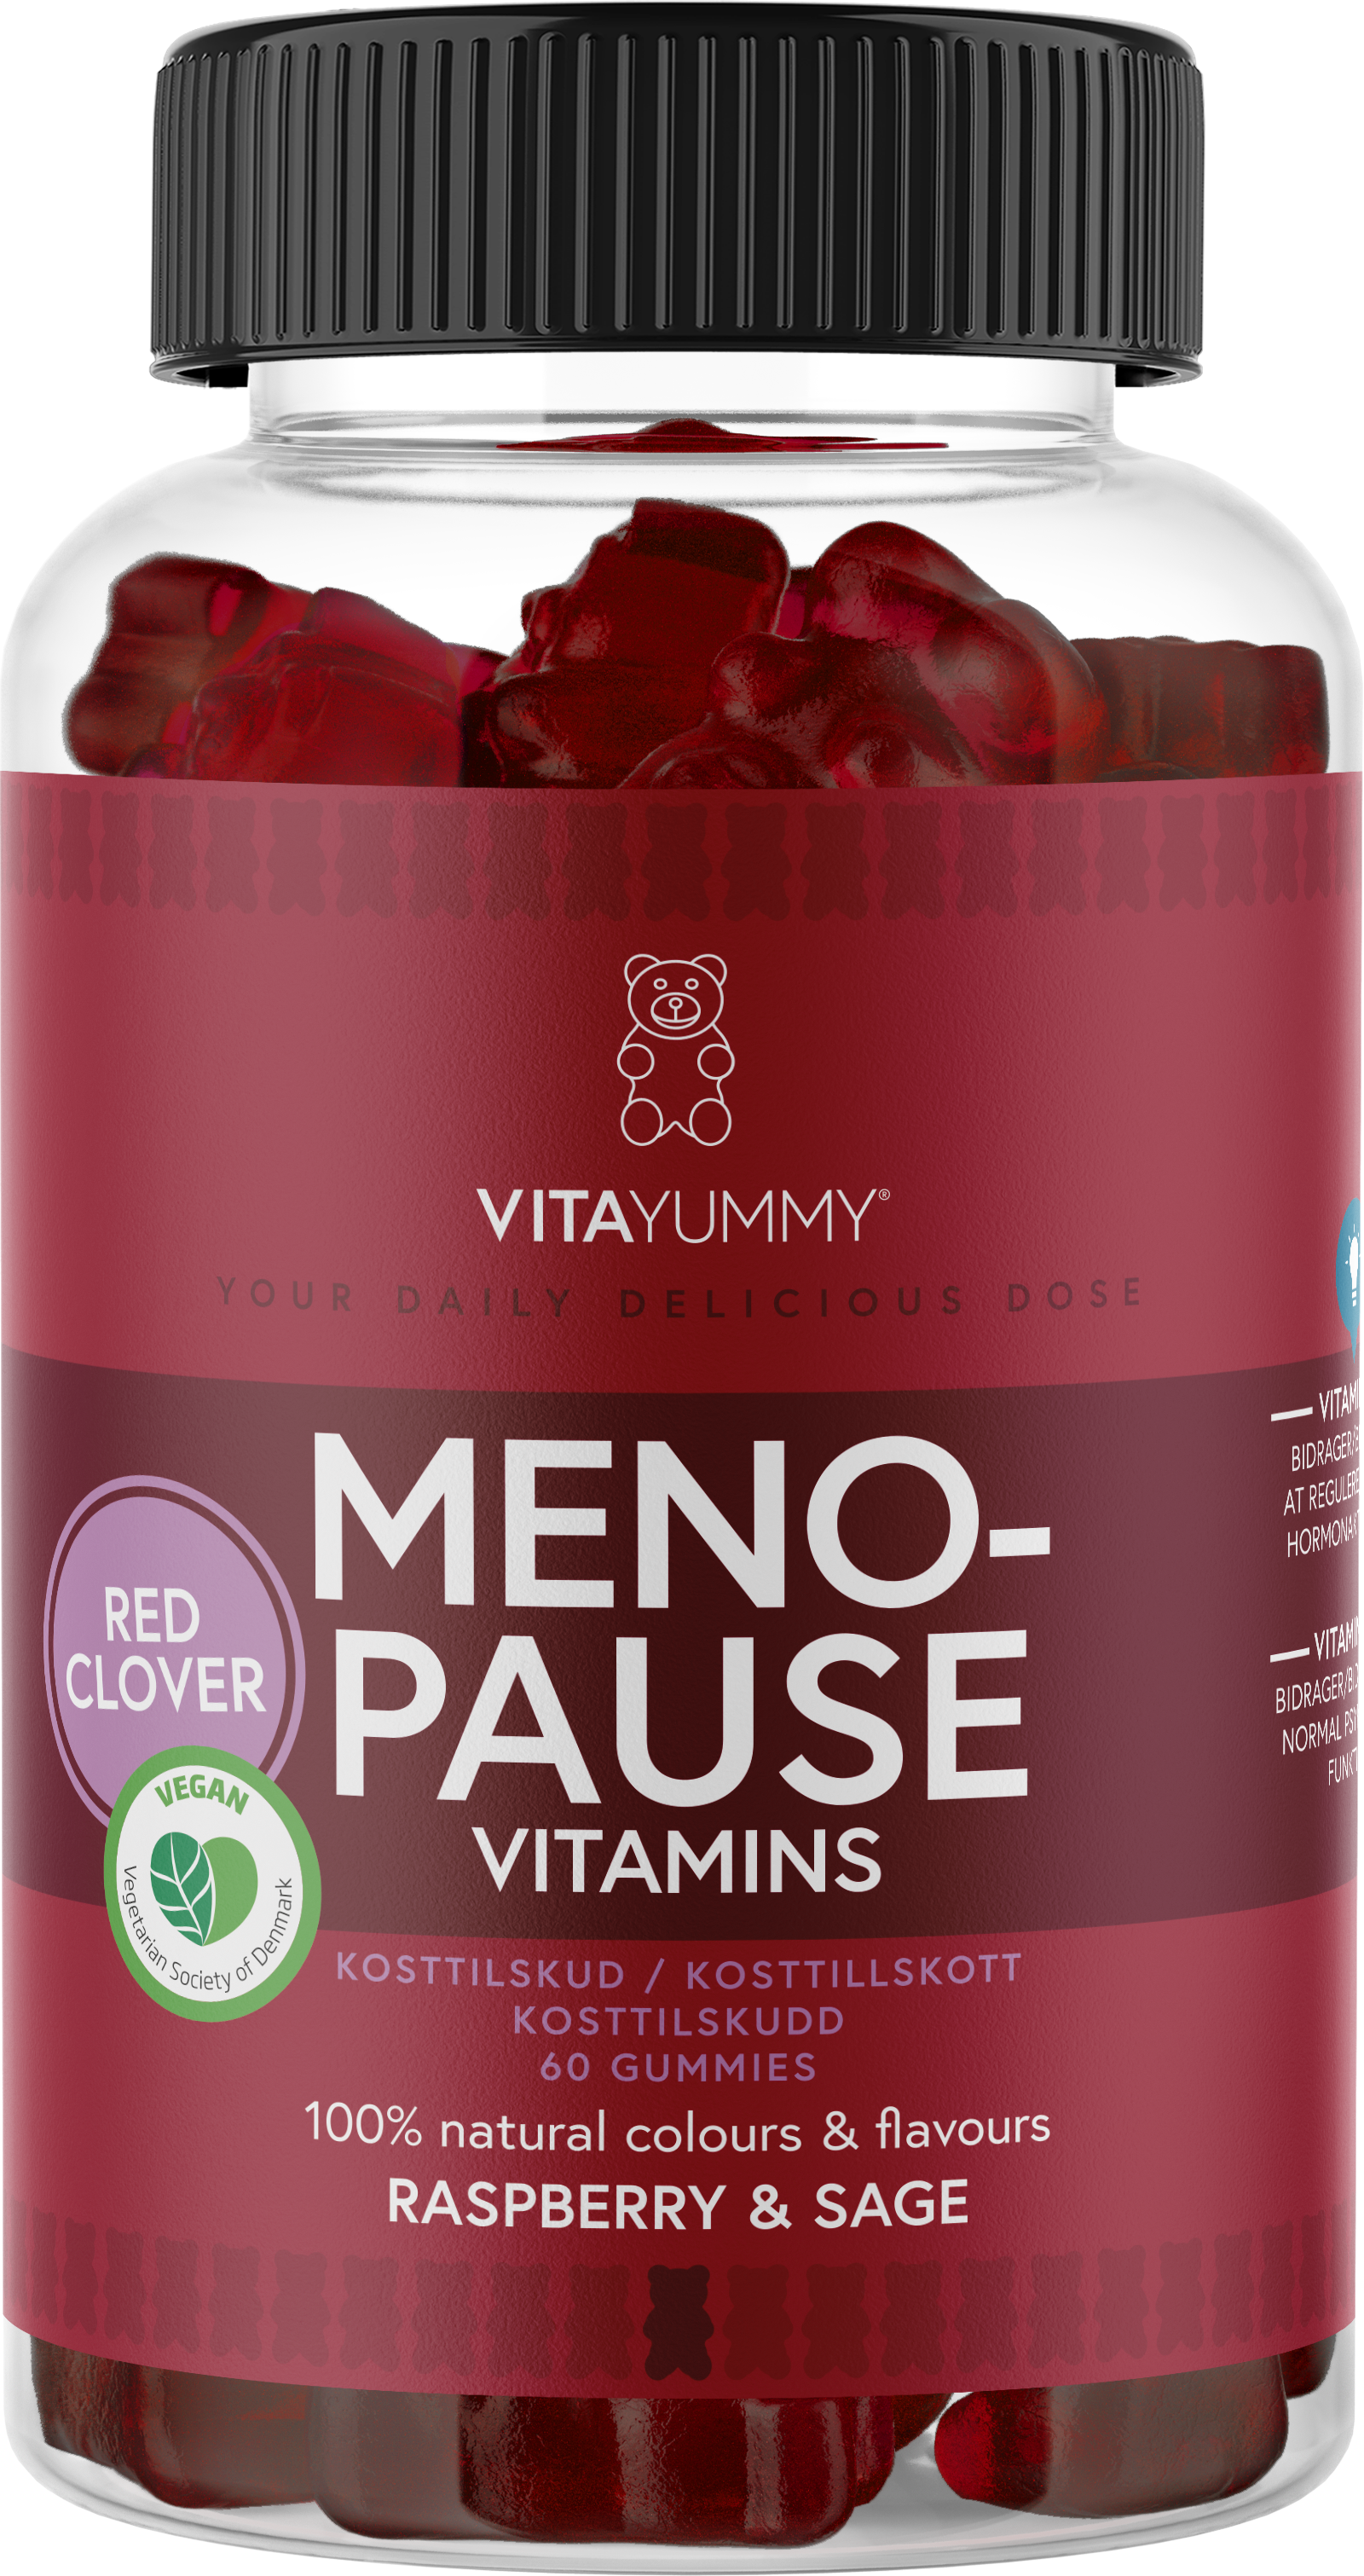 Vitayummy Menopause Raspberry & Sage 60 tuggtabletter